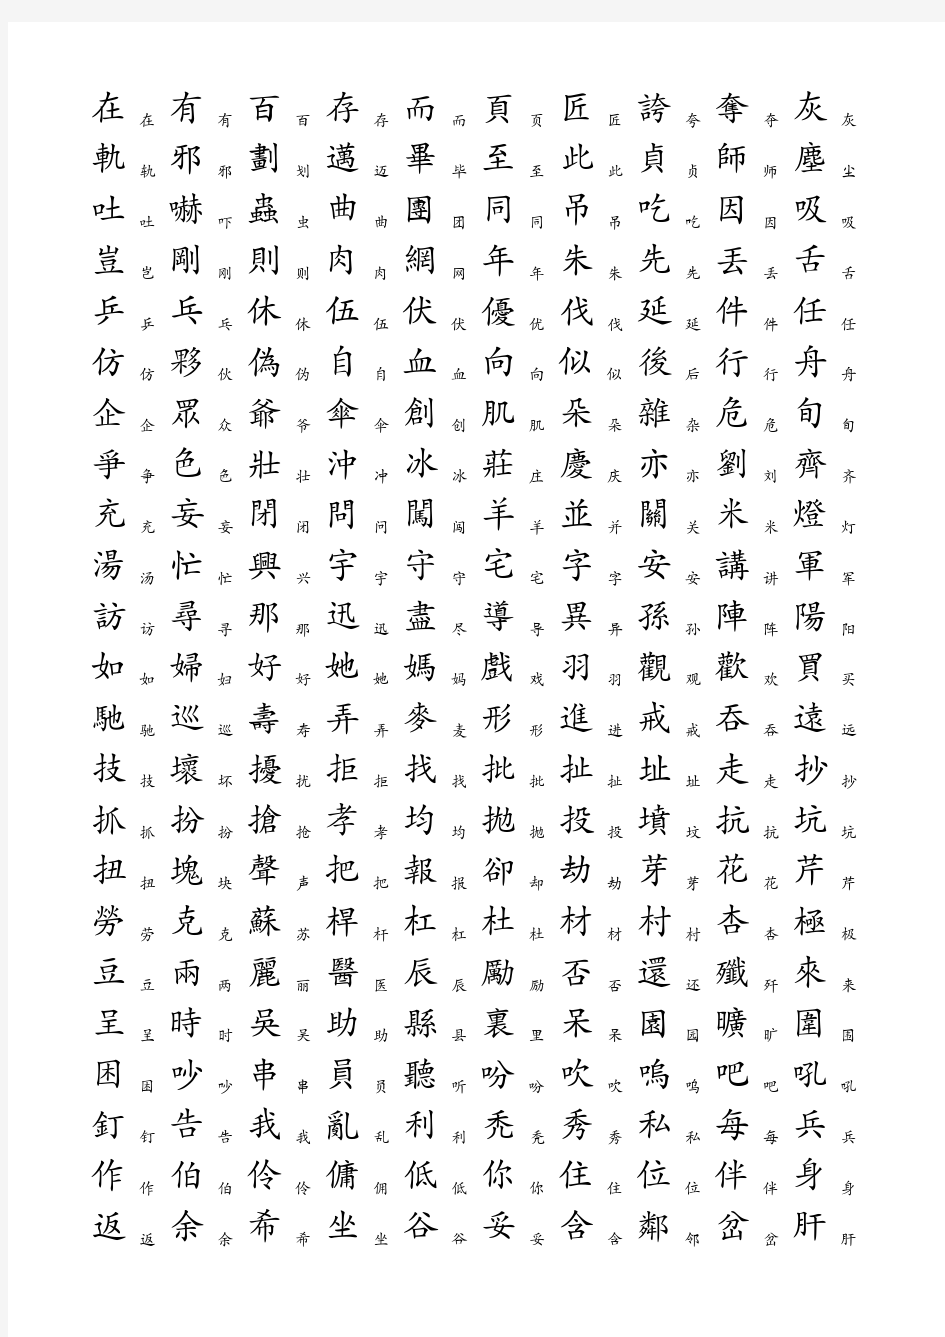 3500个常用汉字简繁对照表(1)